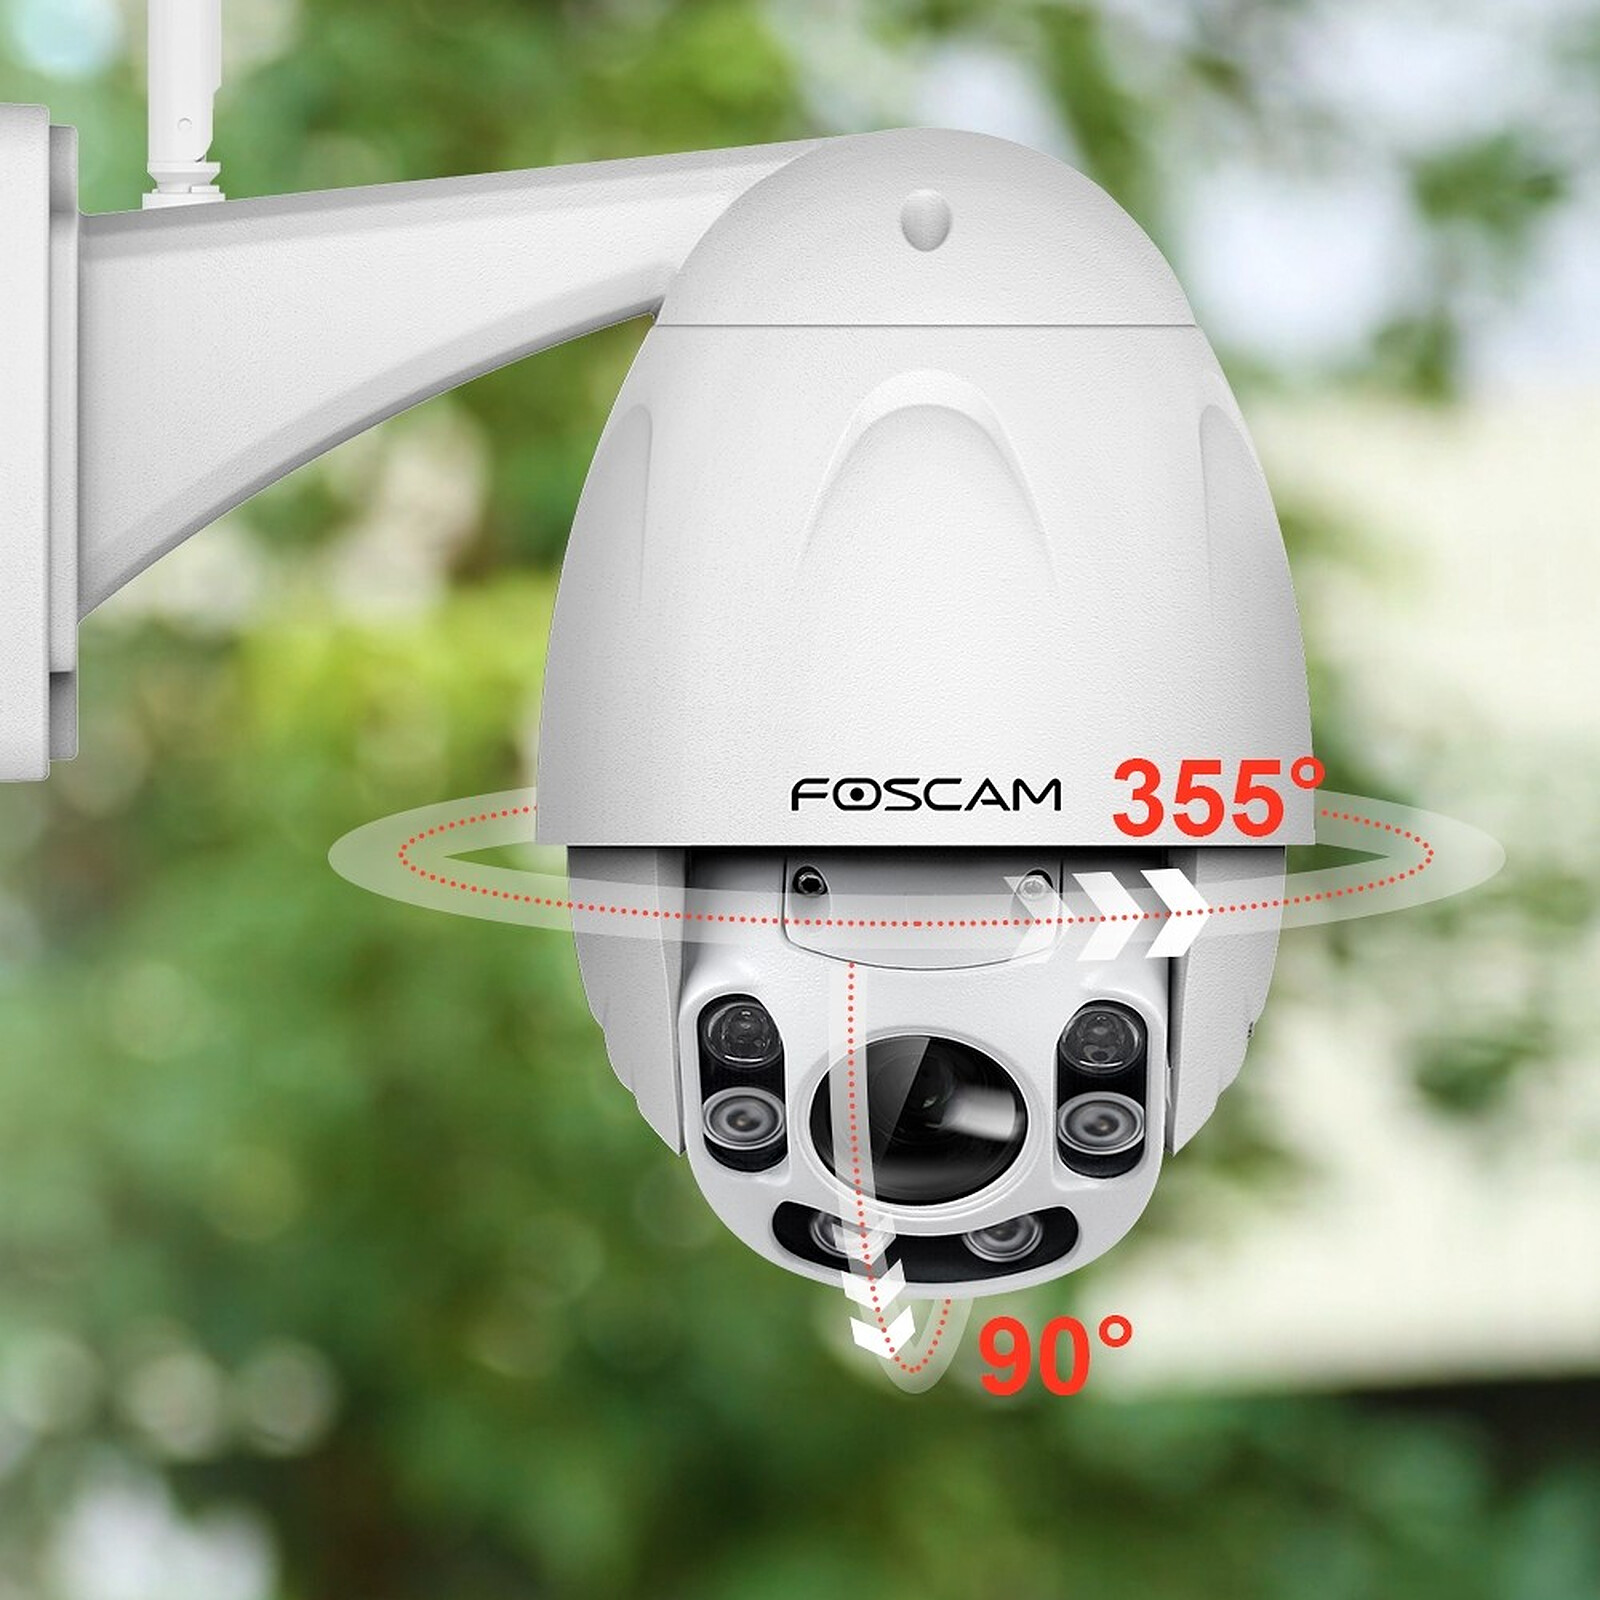 Imou - Caméra Extérieure WiFi Cruiser SE+ 4MP - Caméra de surveillance -  LDLC